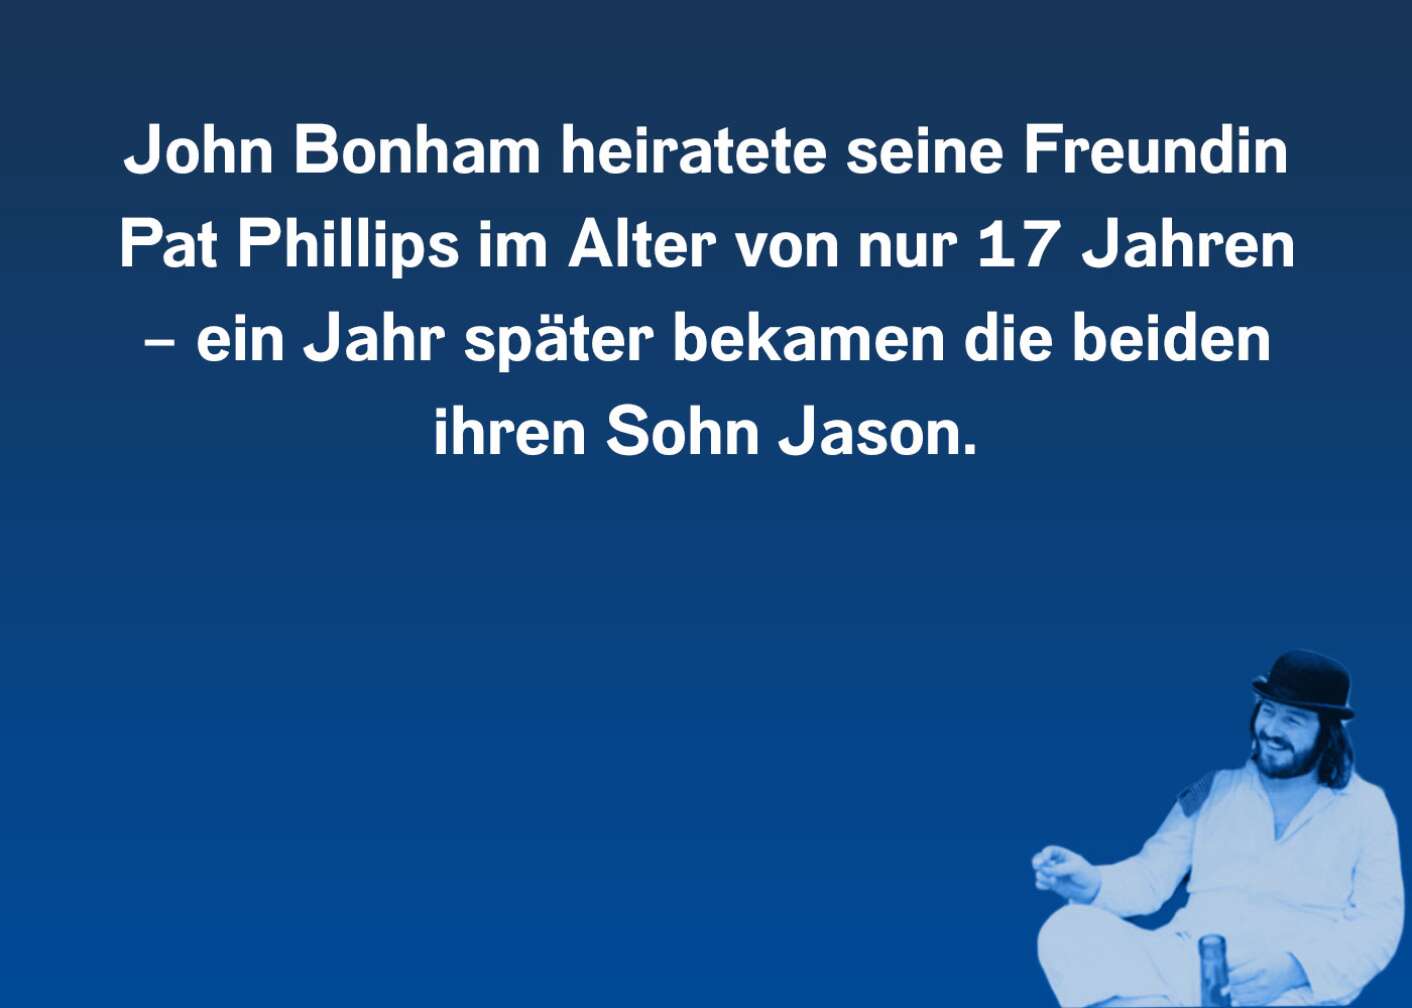 John Bonham Facts